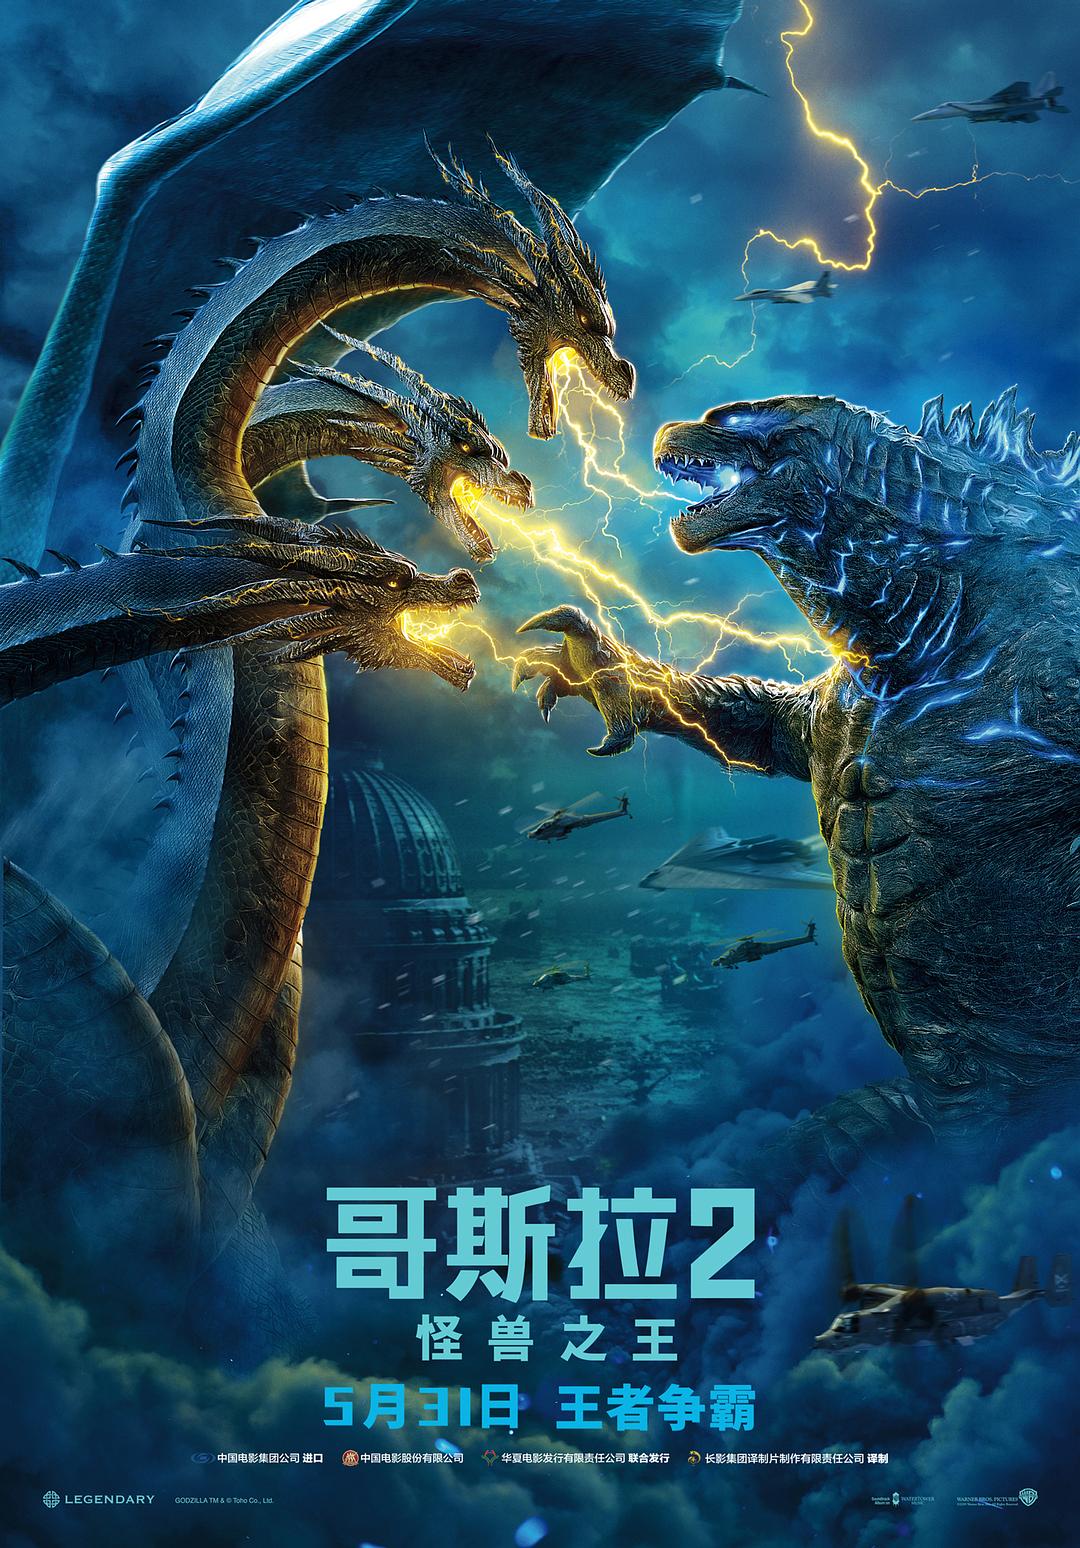 哥斯拉2:怪兽之王 Godzilla.King.of.the.Monsters.2019.1080p.3D.BluRay.Half-SBS.x264.DTS-HD.MA.7.1-FGT 21.86GB-1.png